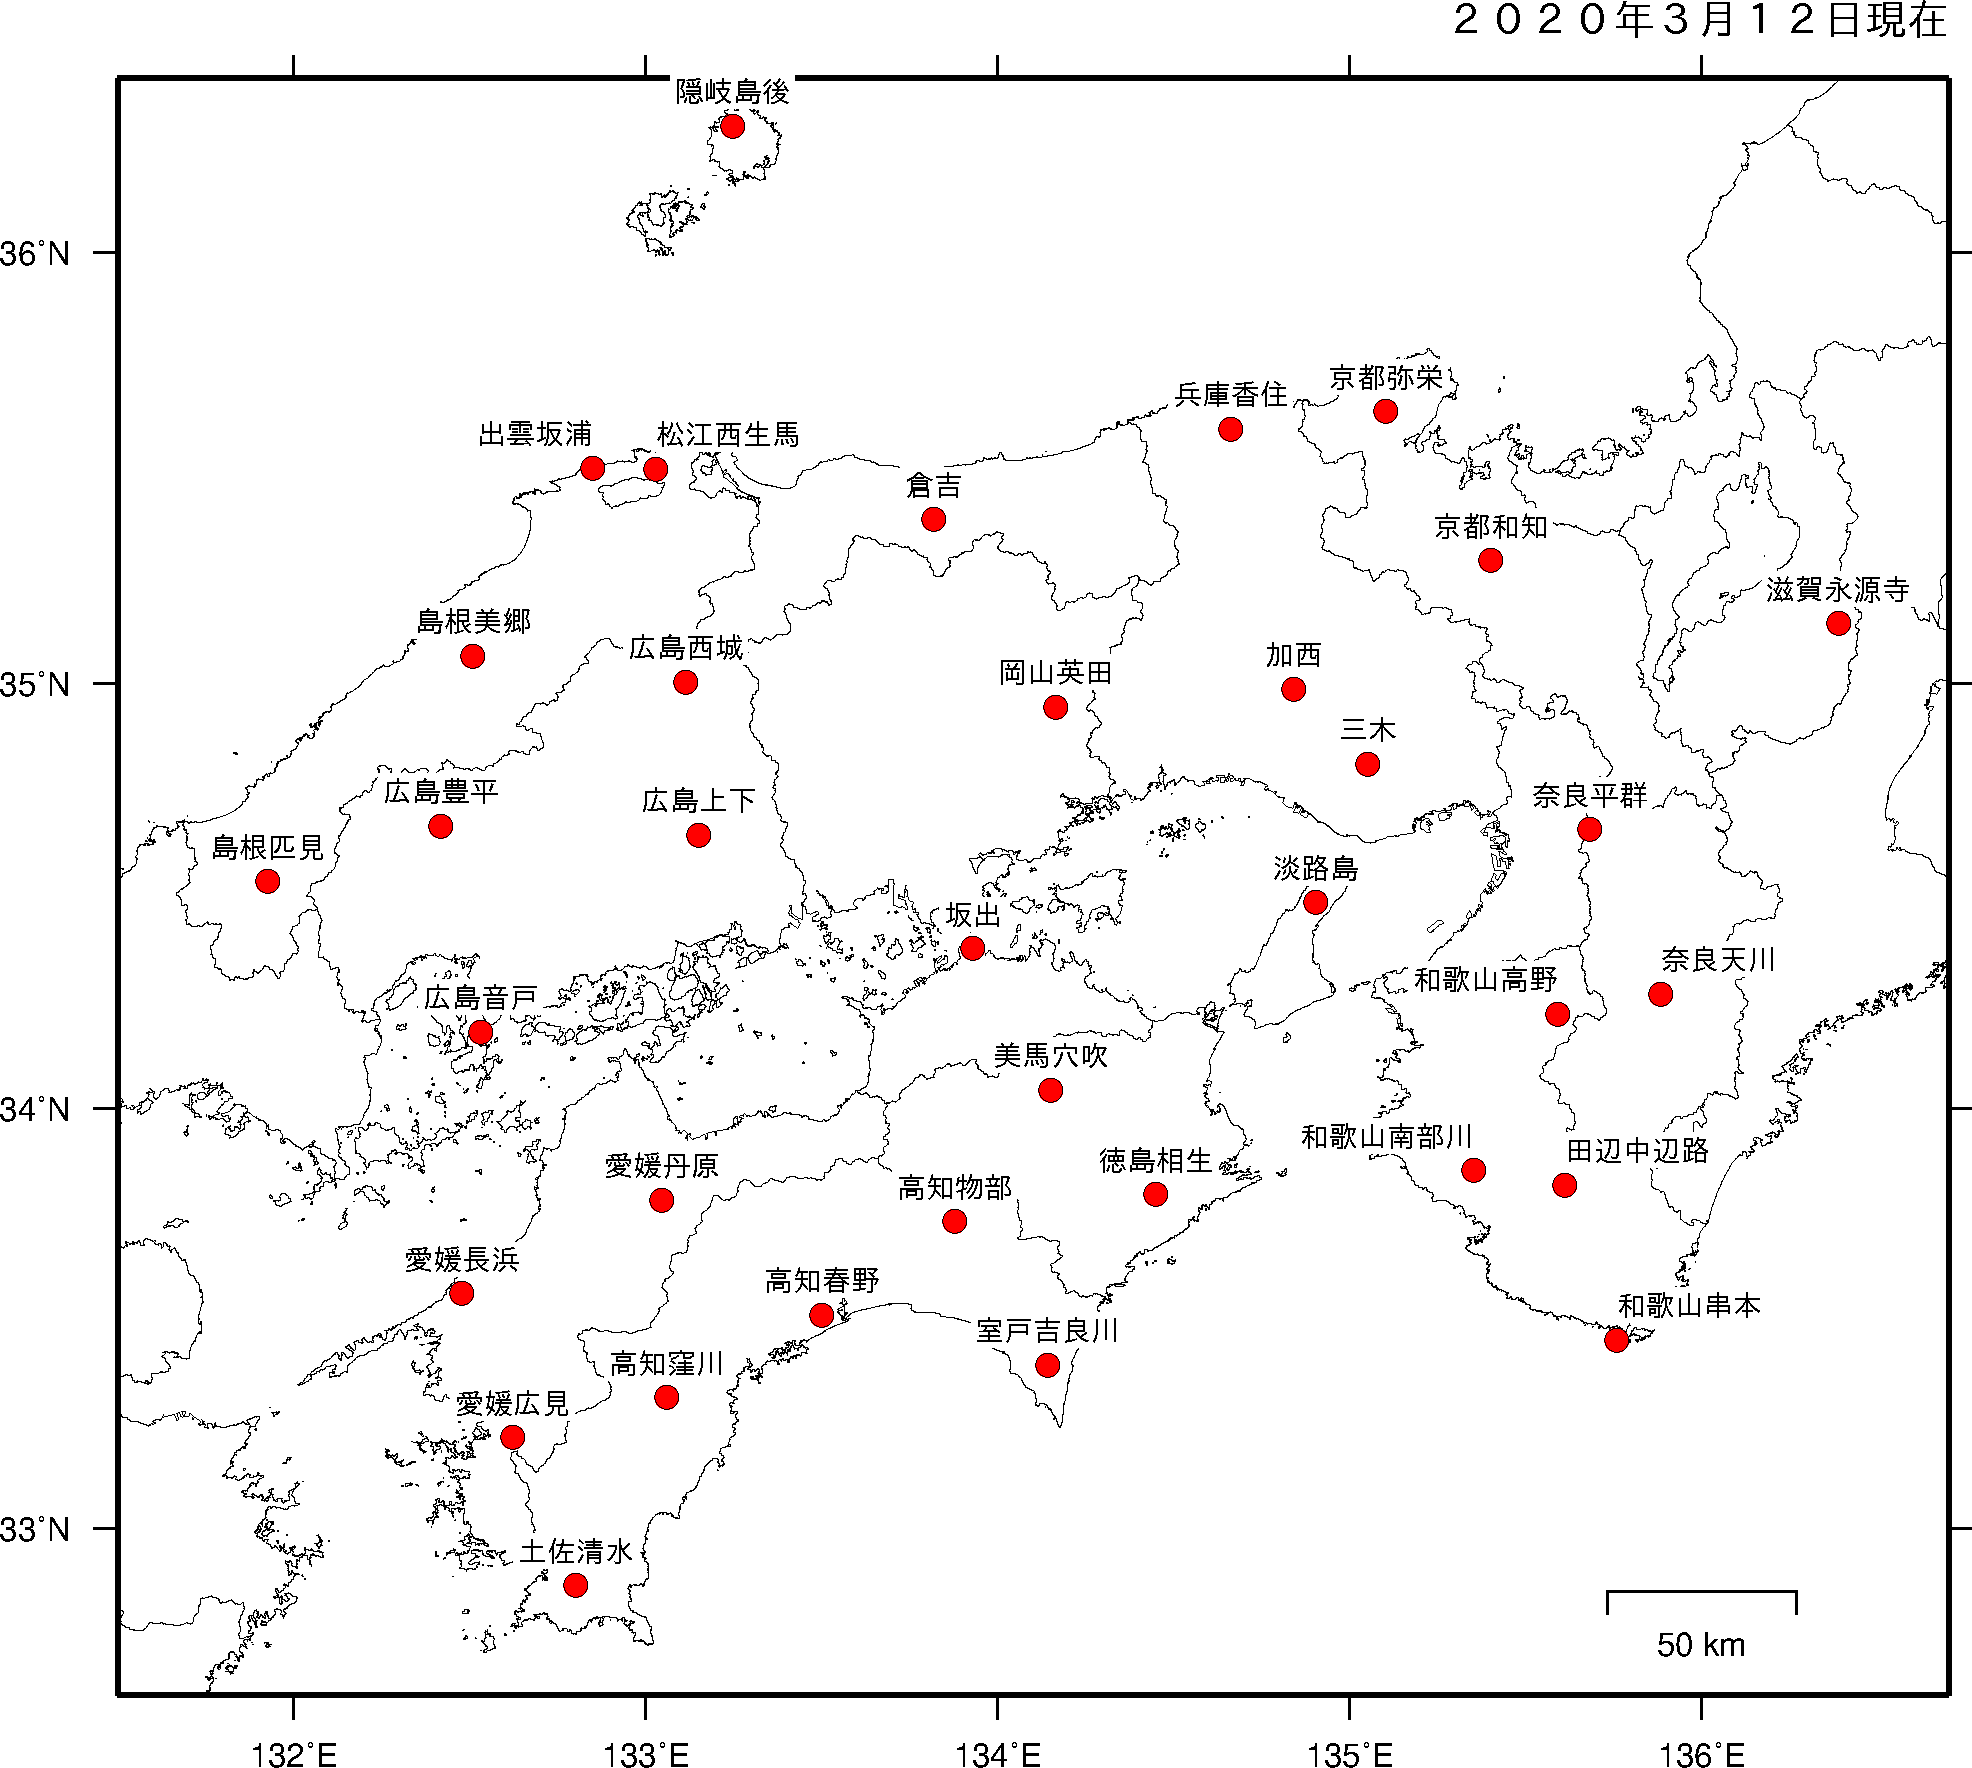 気象庁の地震観測点（大阪管内）